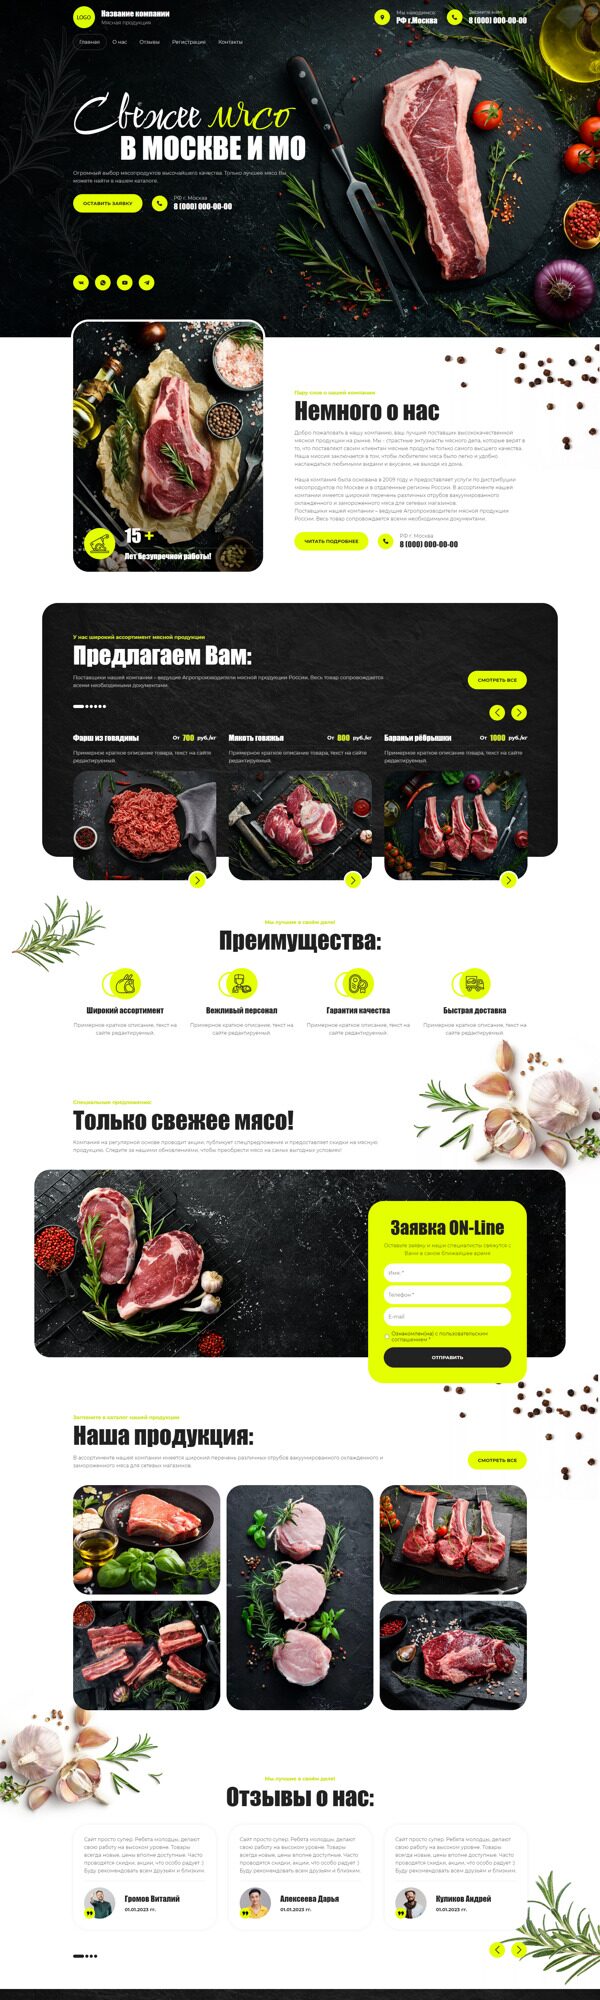 Готовый Сайт-Бизнес № 5094318 - Мясо и мясопродукты (Десктопная версия)